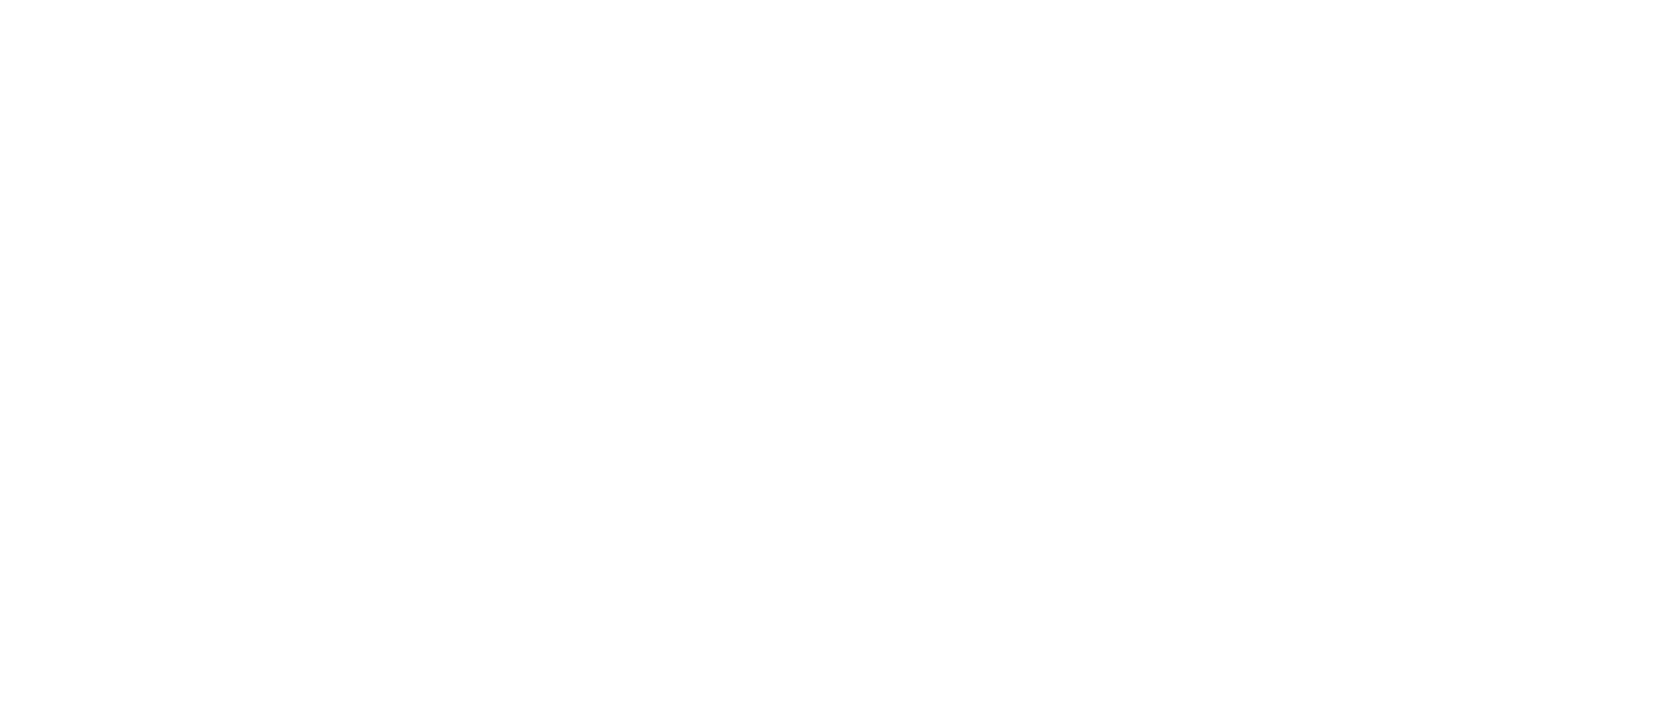 Логотип хоум кредит банка